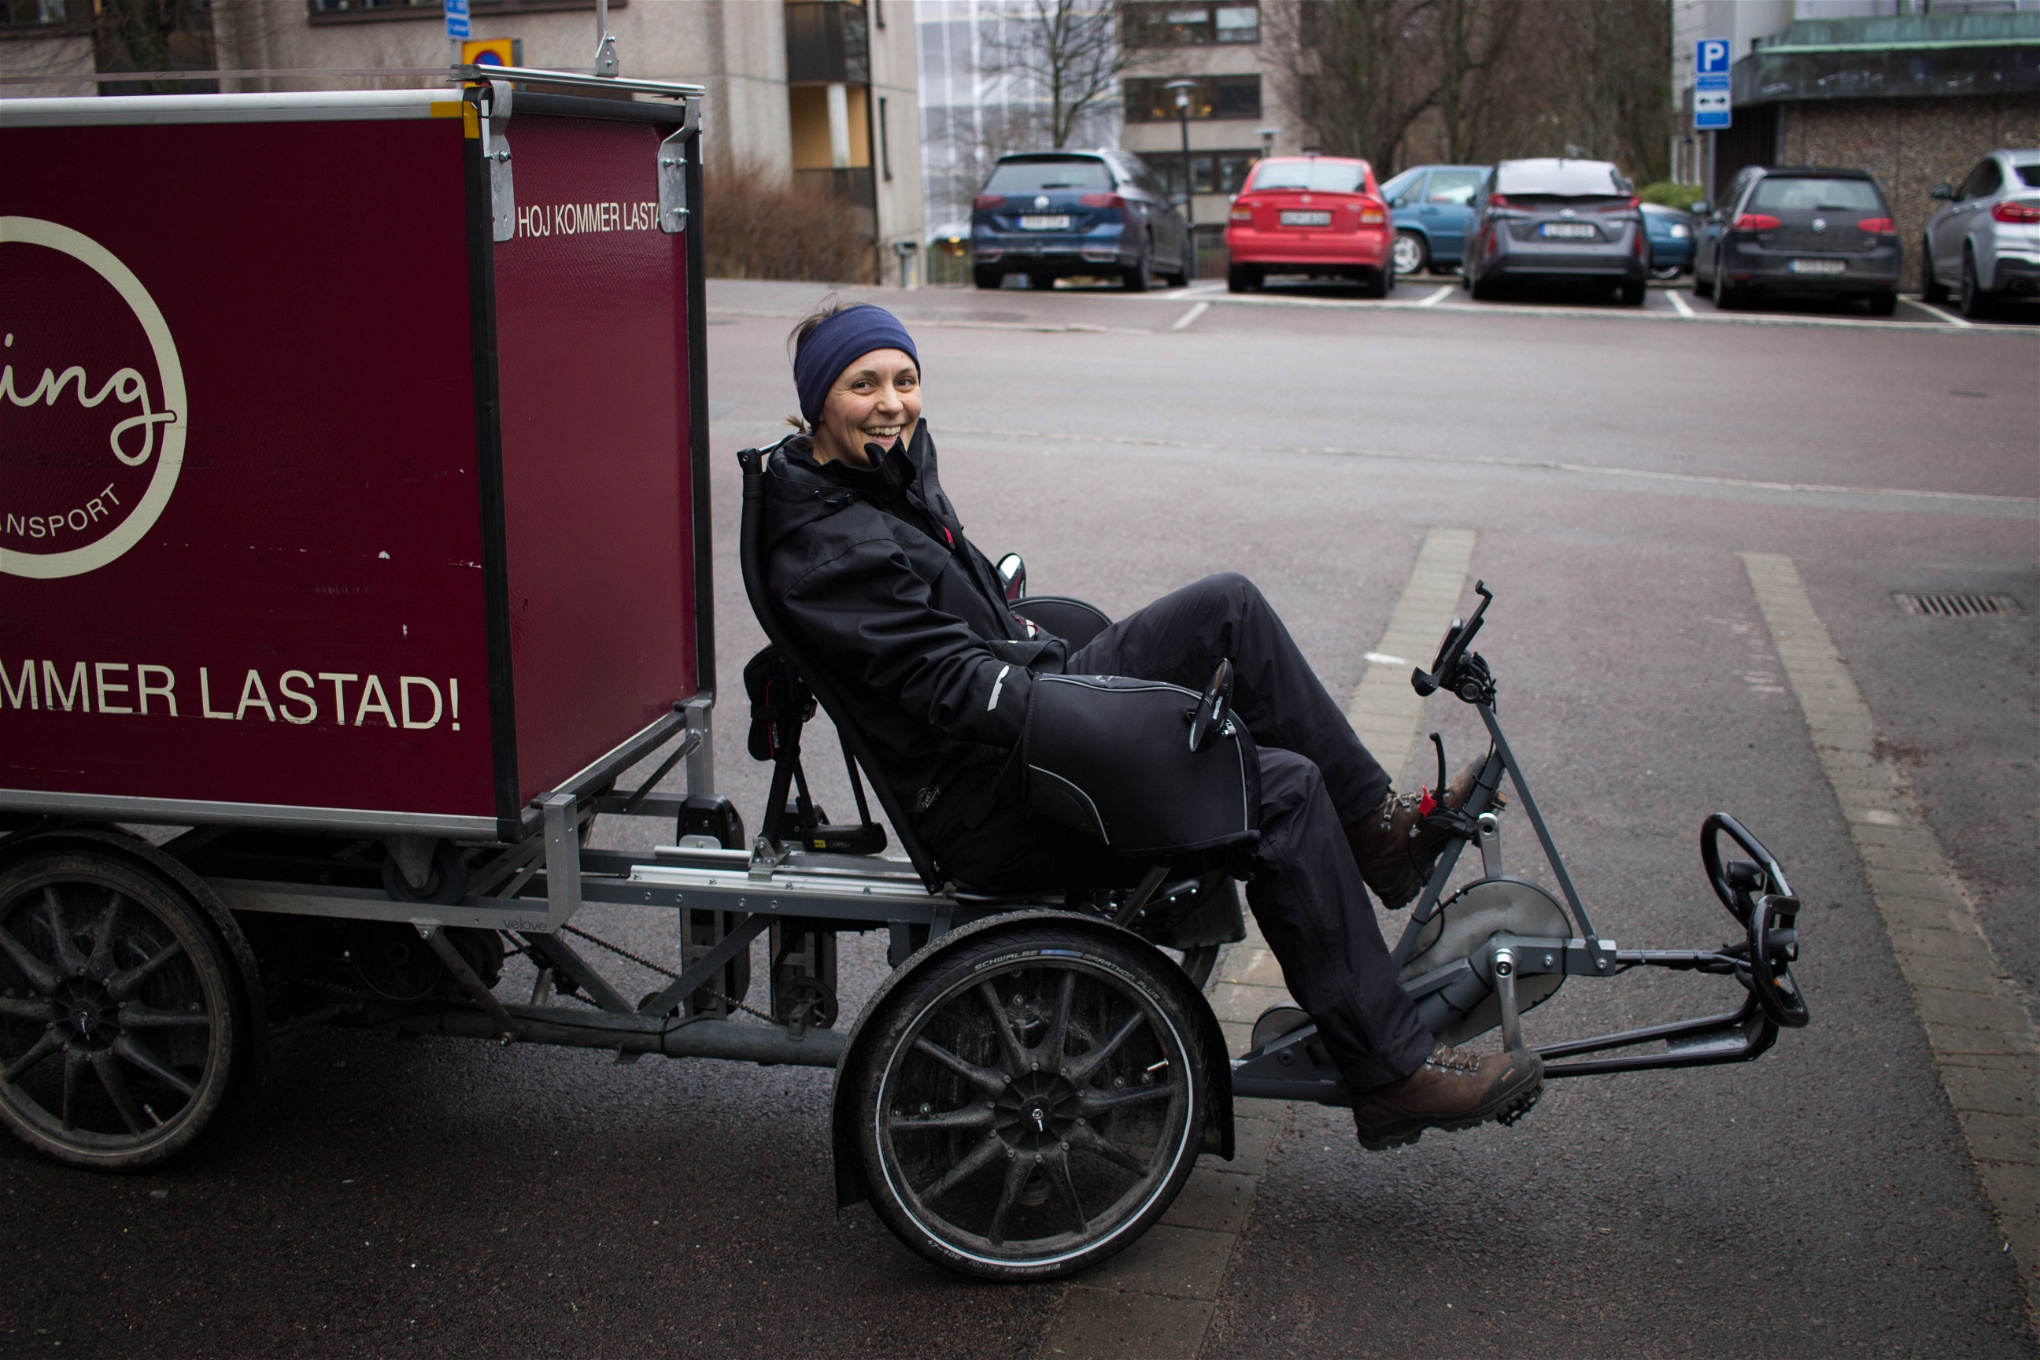 Foto: Katja PaloAnnika Hagberg har jobbat deltid på åkeriet i närmare ett år. Det är hennes första fasta anställning. Lastcykeln är specialdesignad, elassisterad och kan transportera 150 kilo gods i skåpet. De har även större lastcyklar och vanliga elcyklar. 